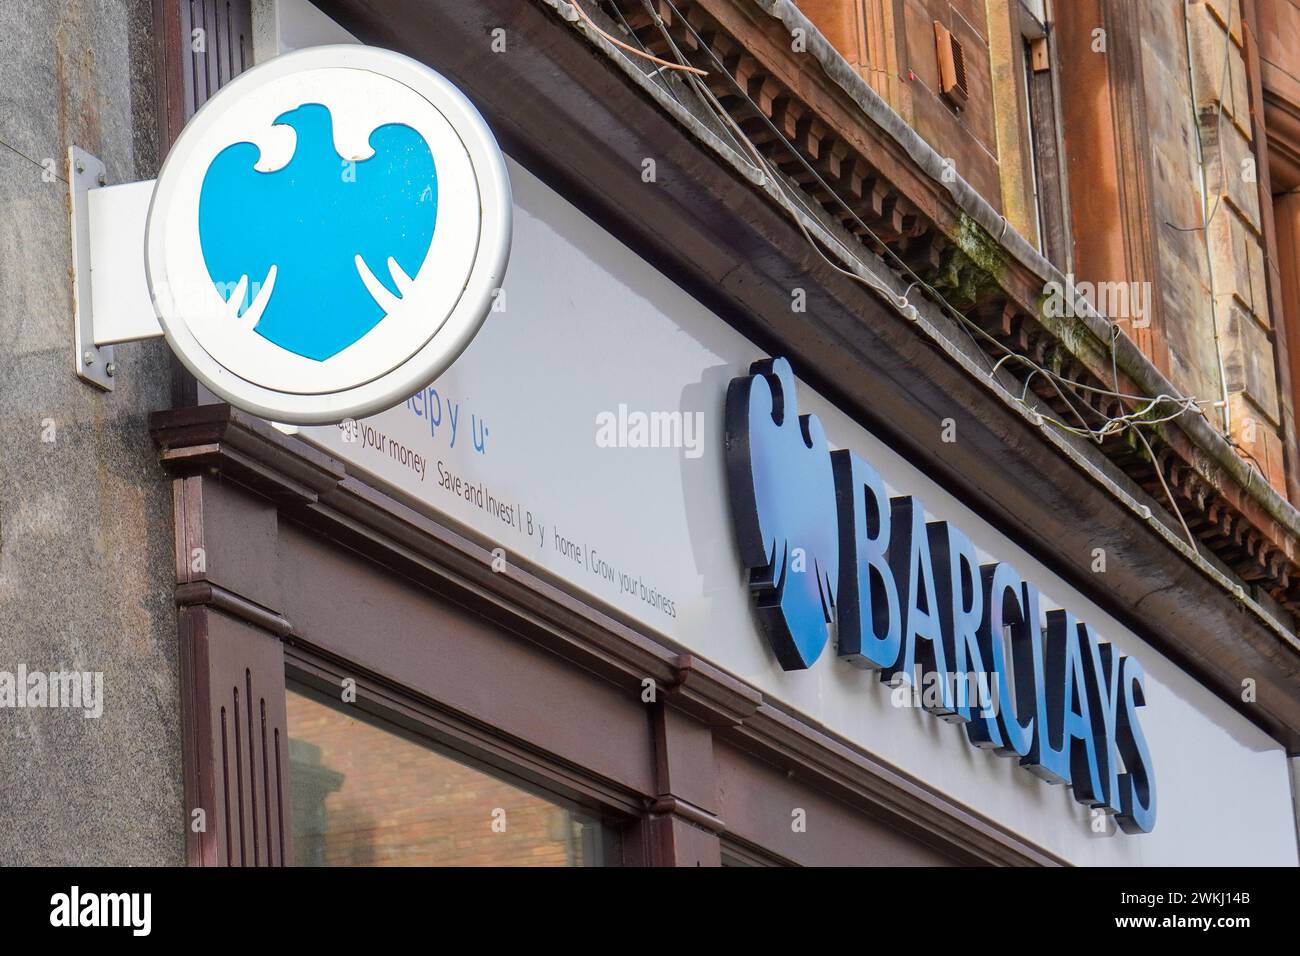 Signe pour la banque BARCLAYS et logo, Ayr, Royaume-Uni Banque D'Images